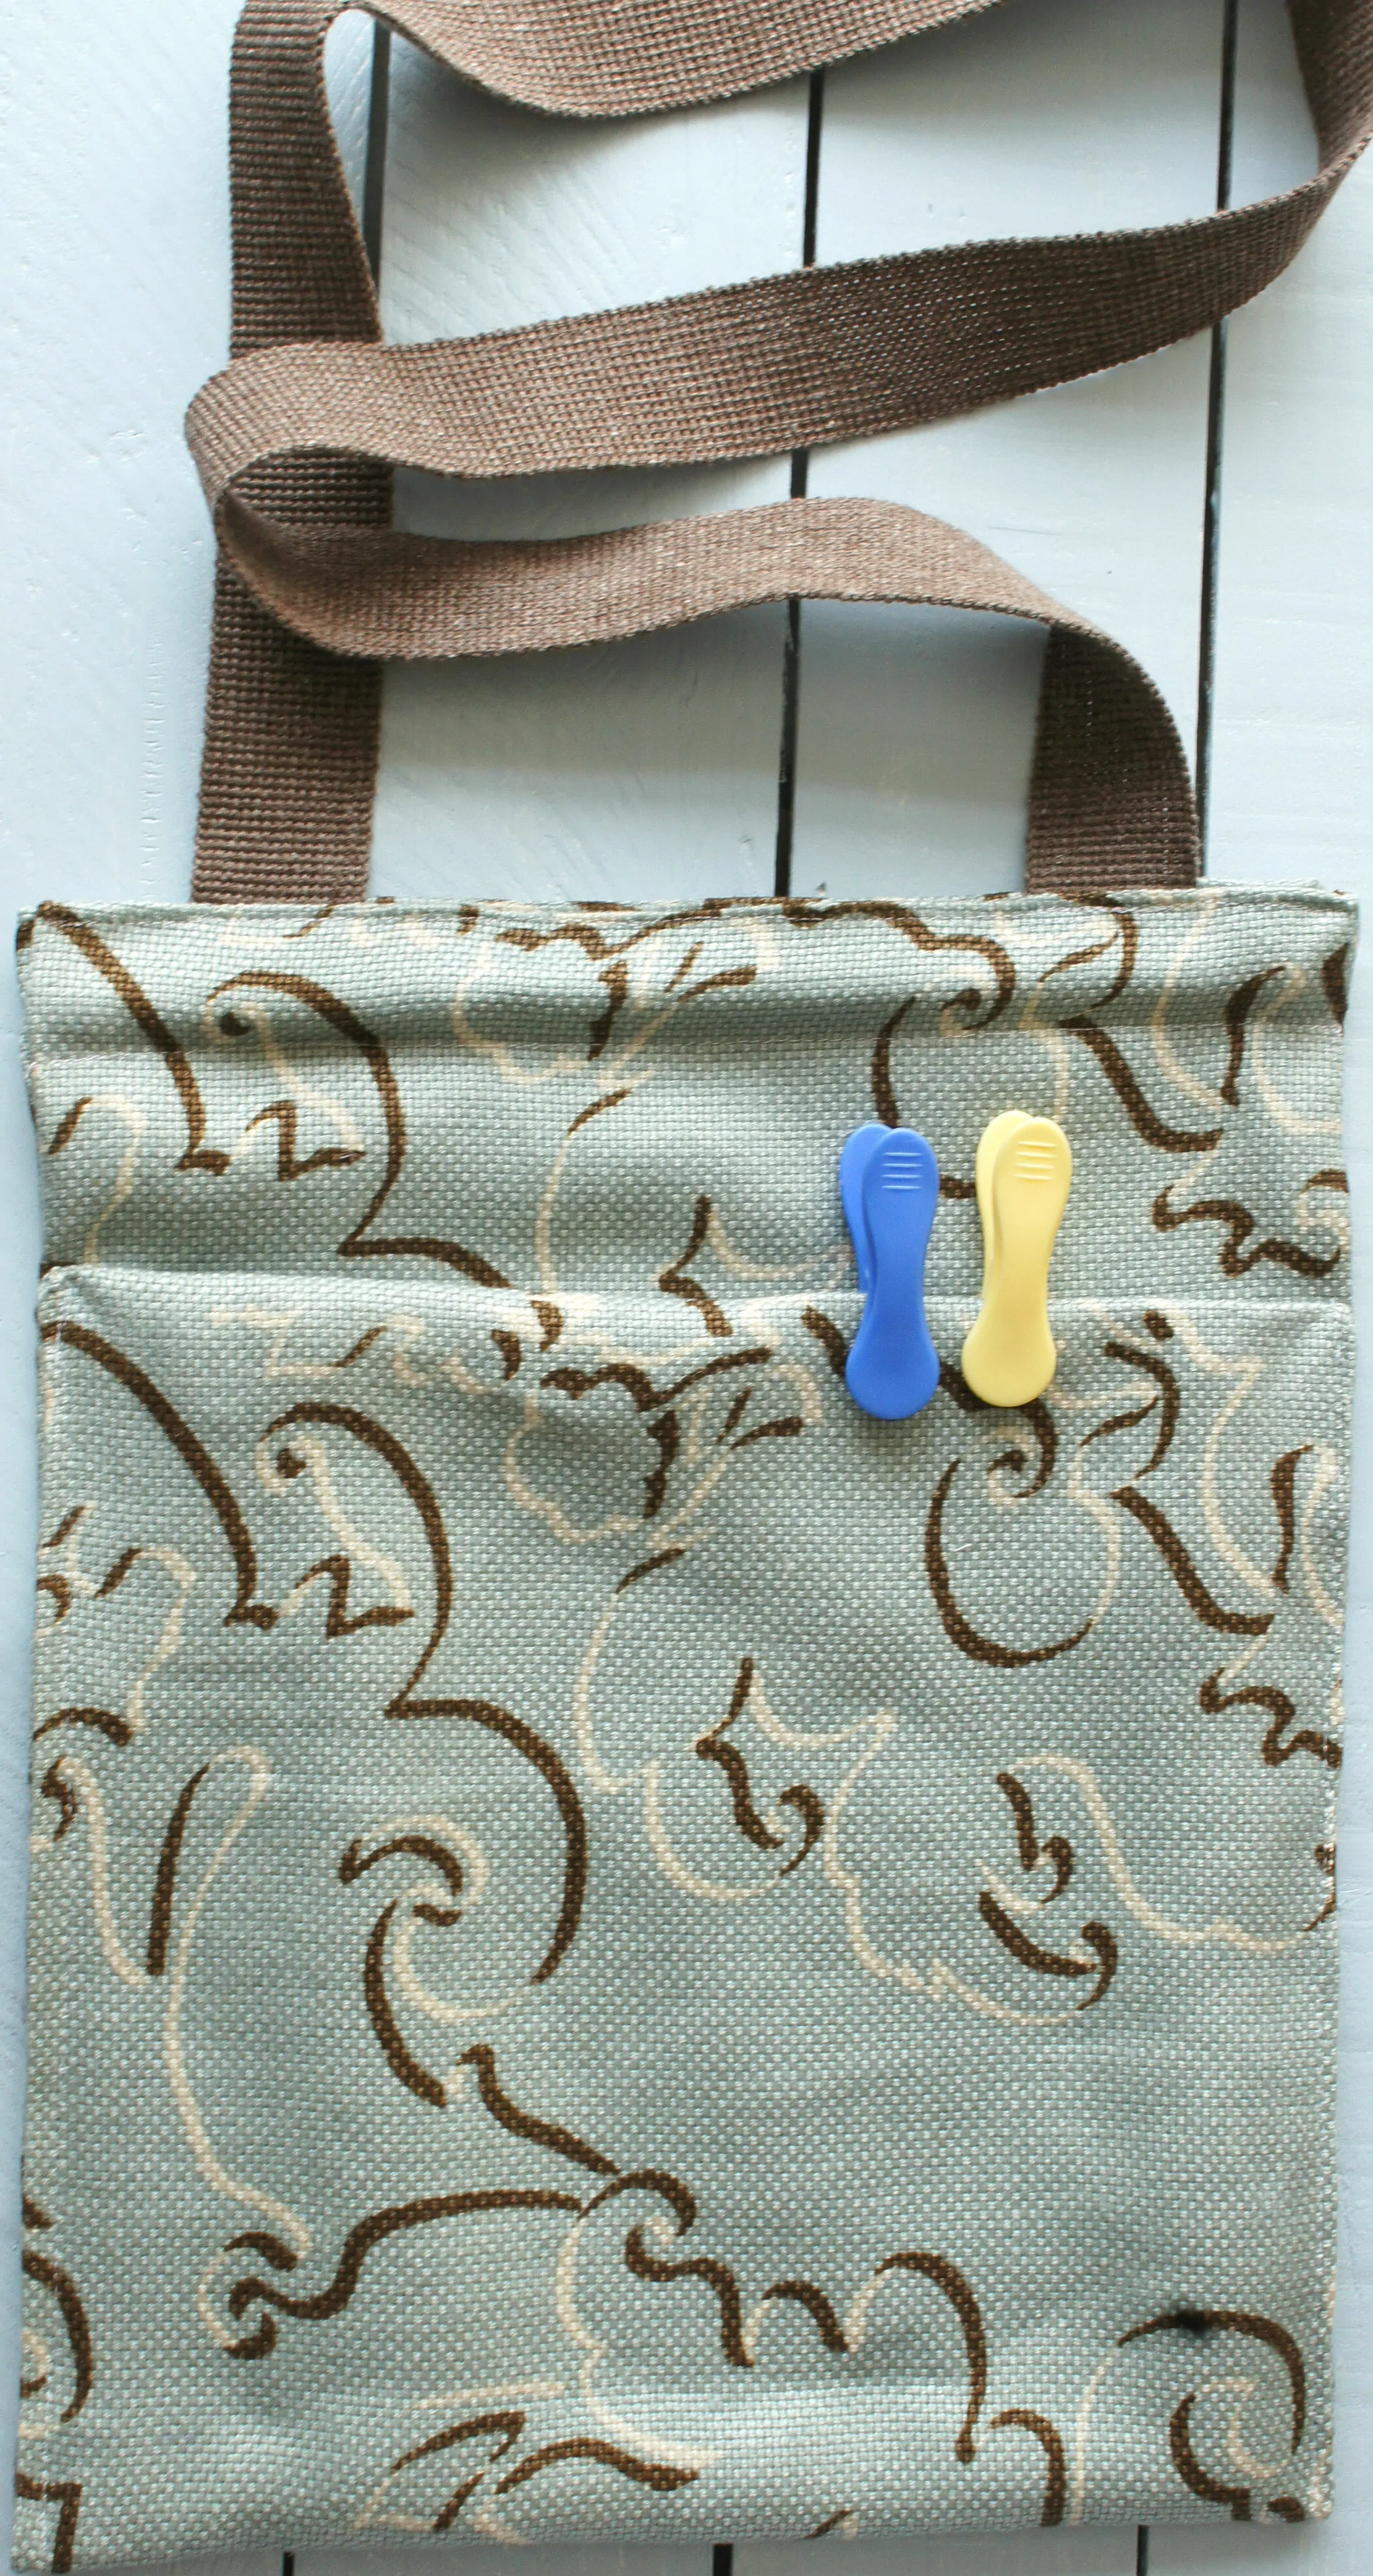 Clothespin Bag sewn